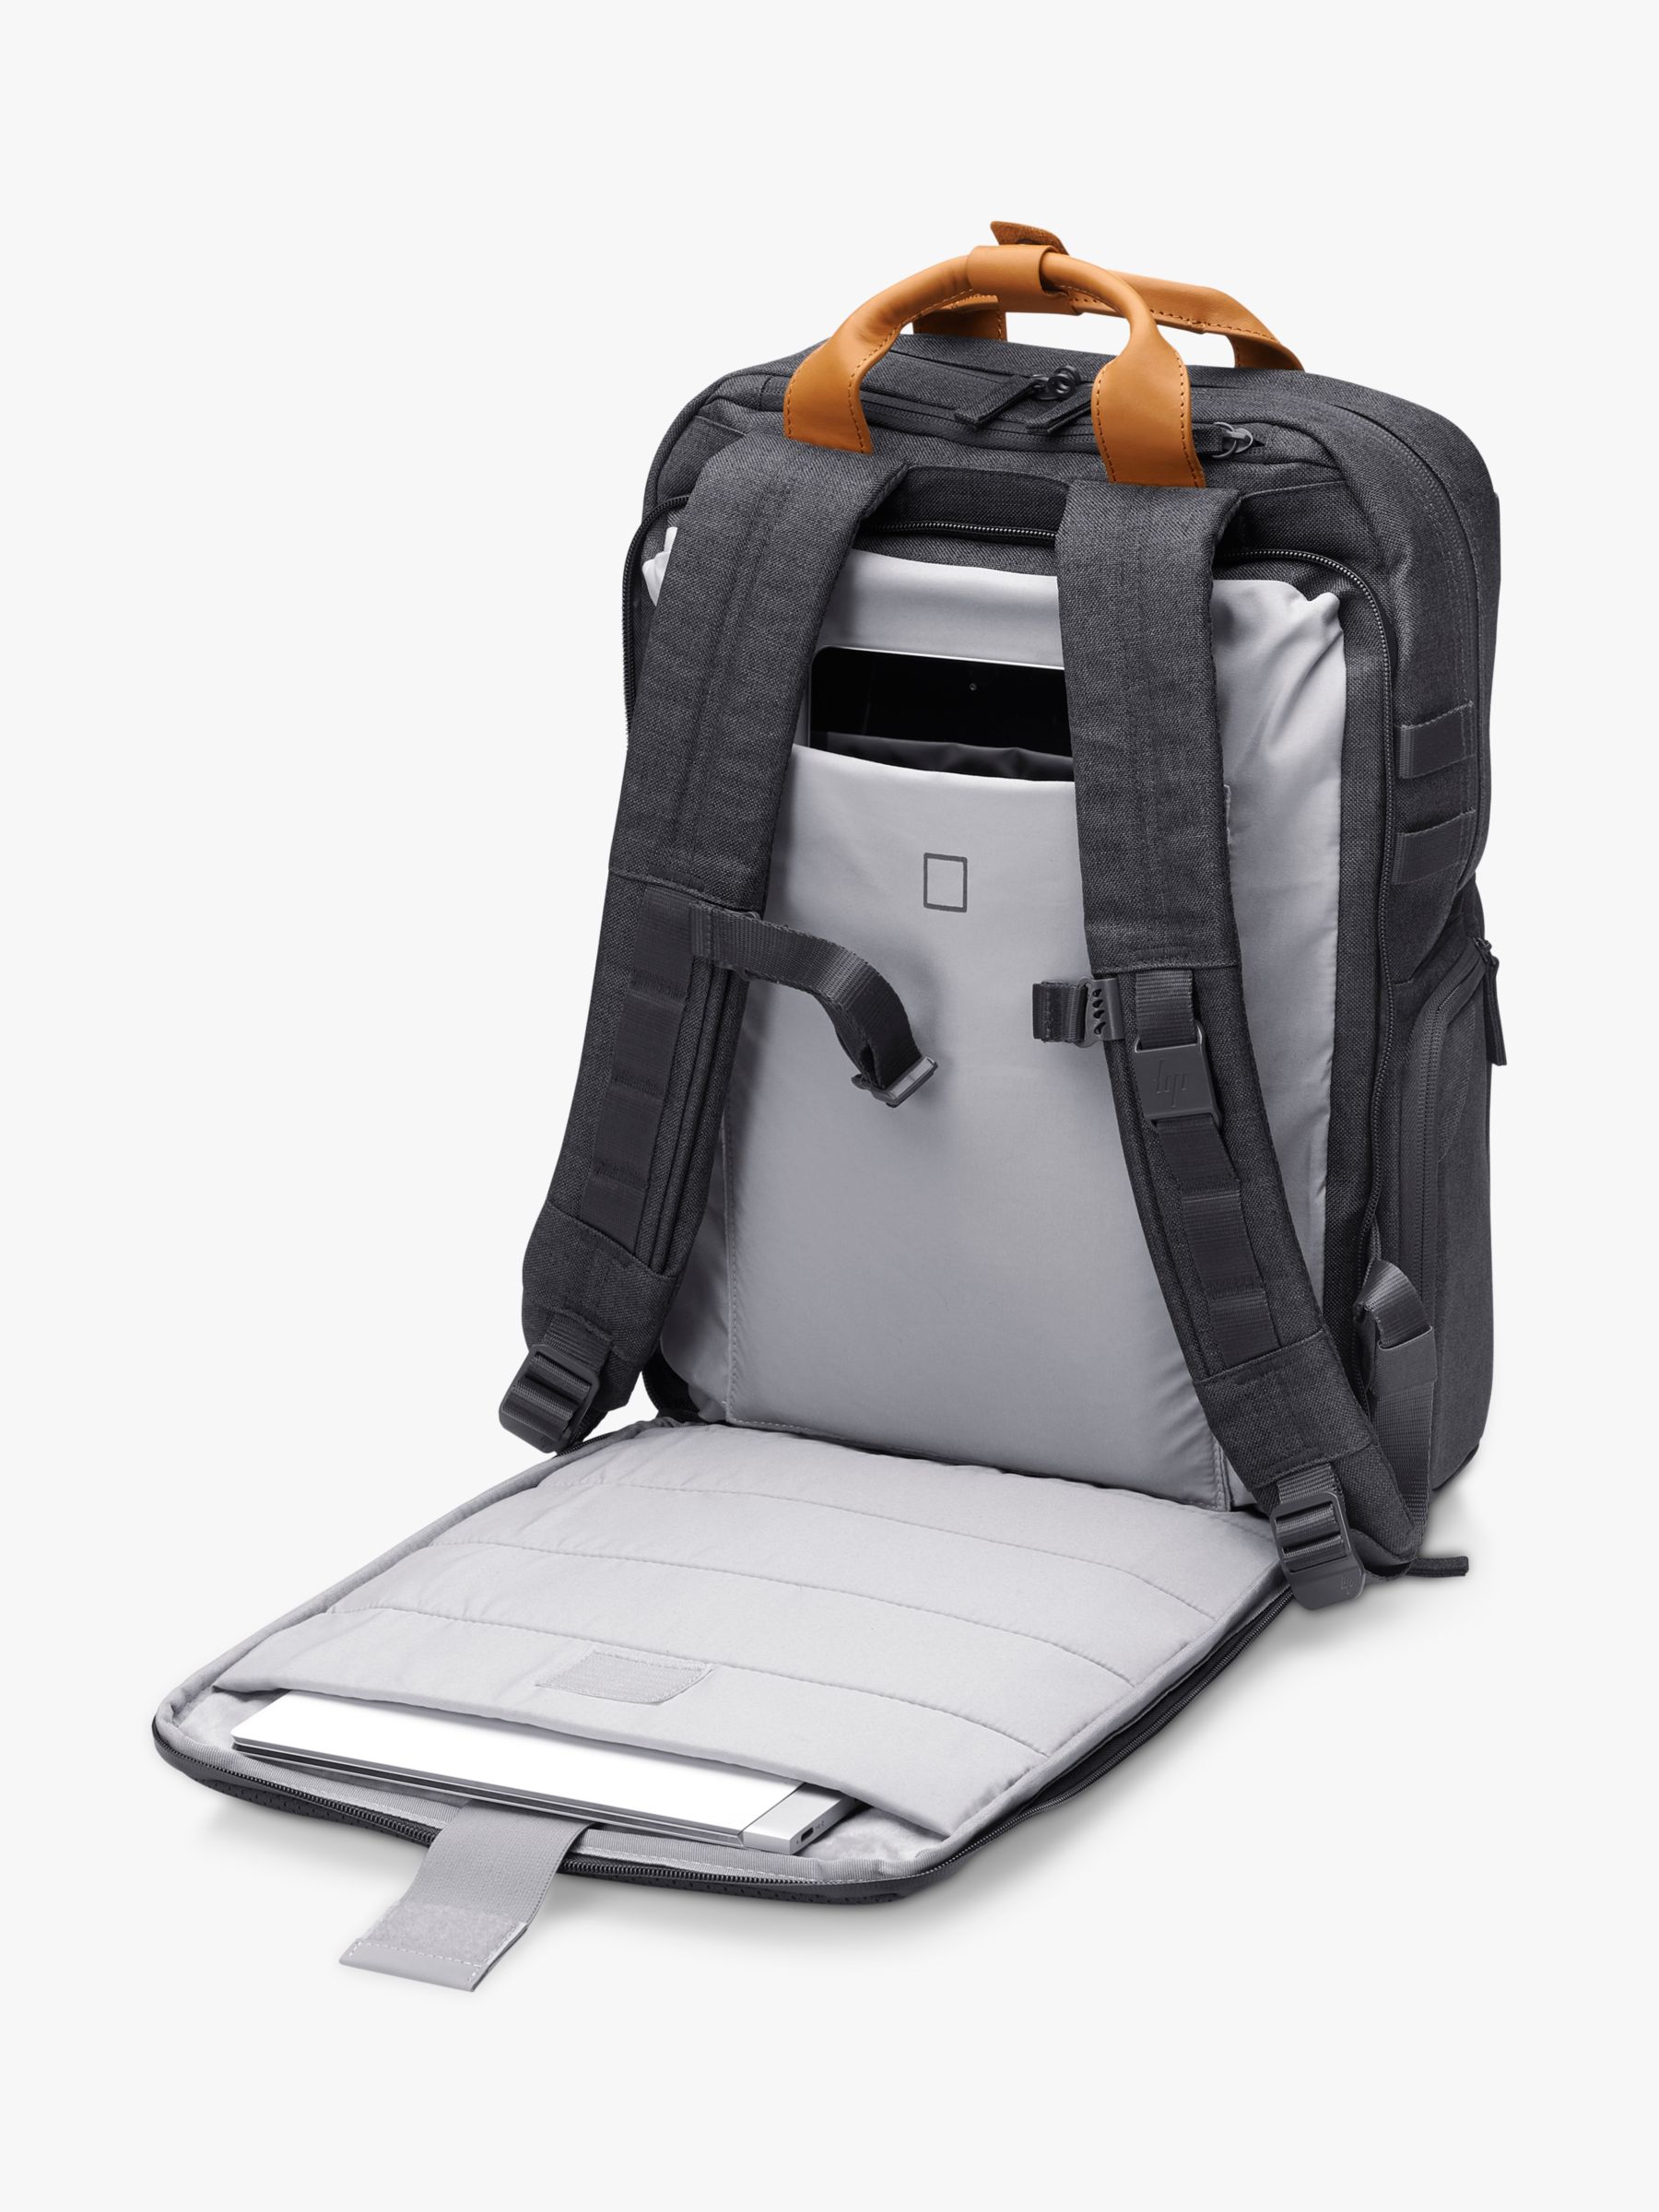 hp laptop bag